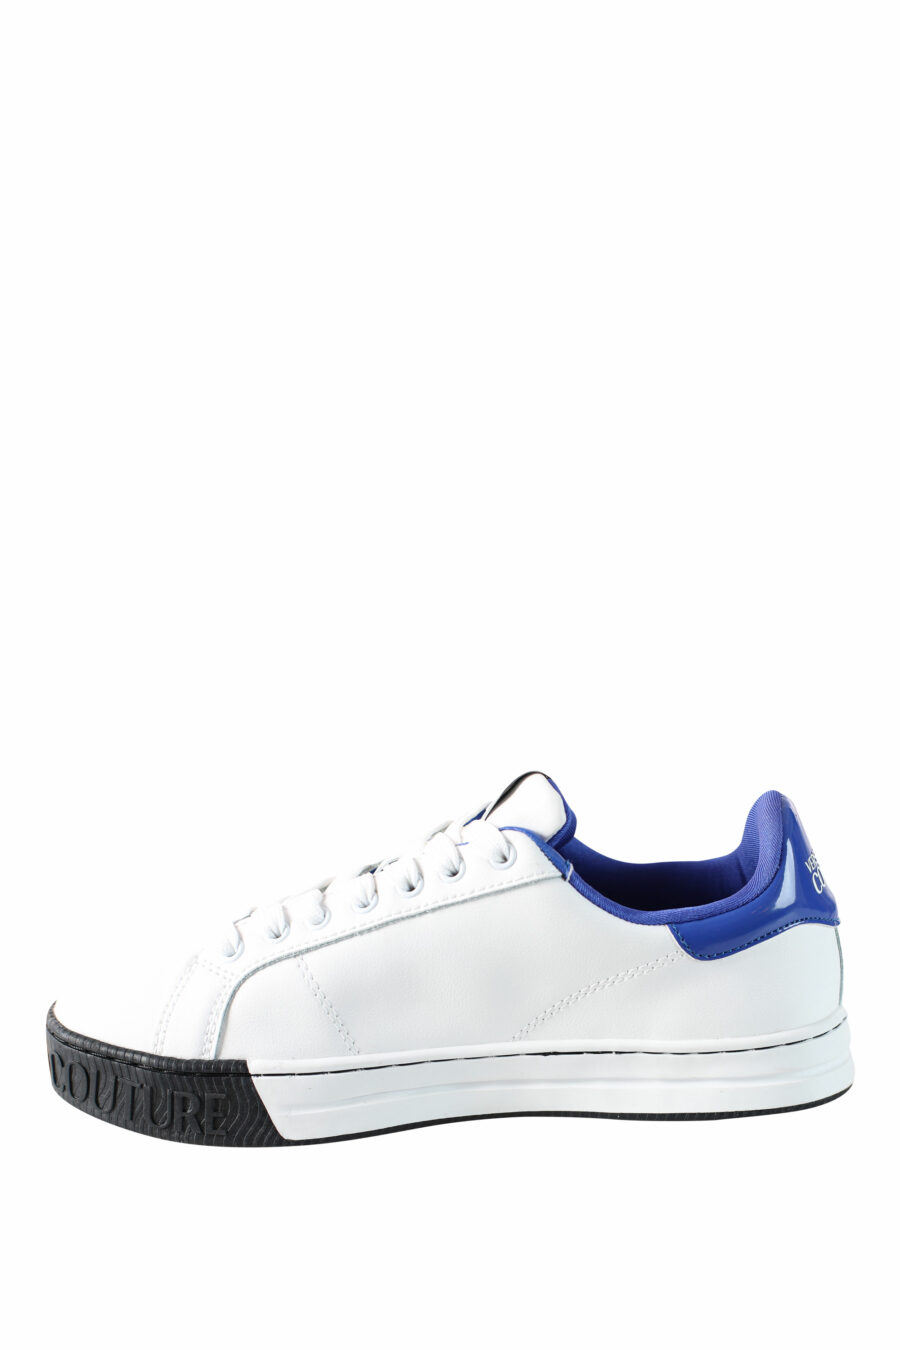 Zapatillas blancas con azul y logo circular - IMG 4507